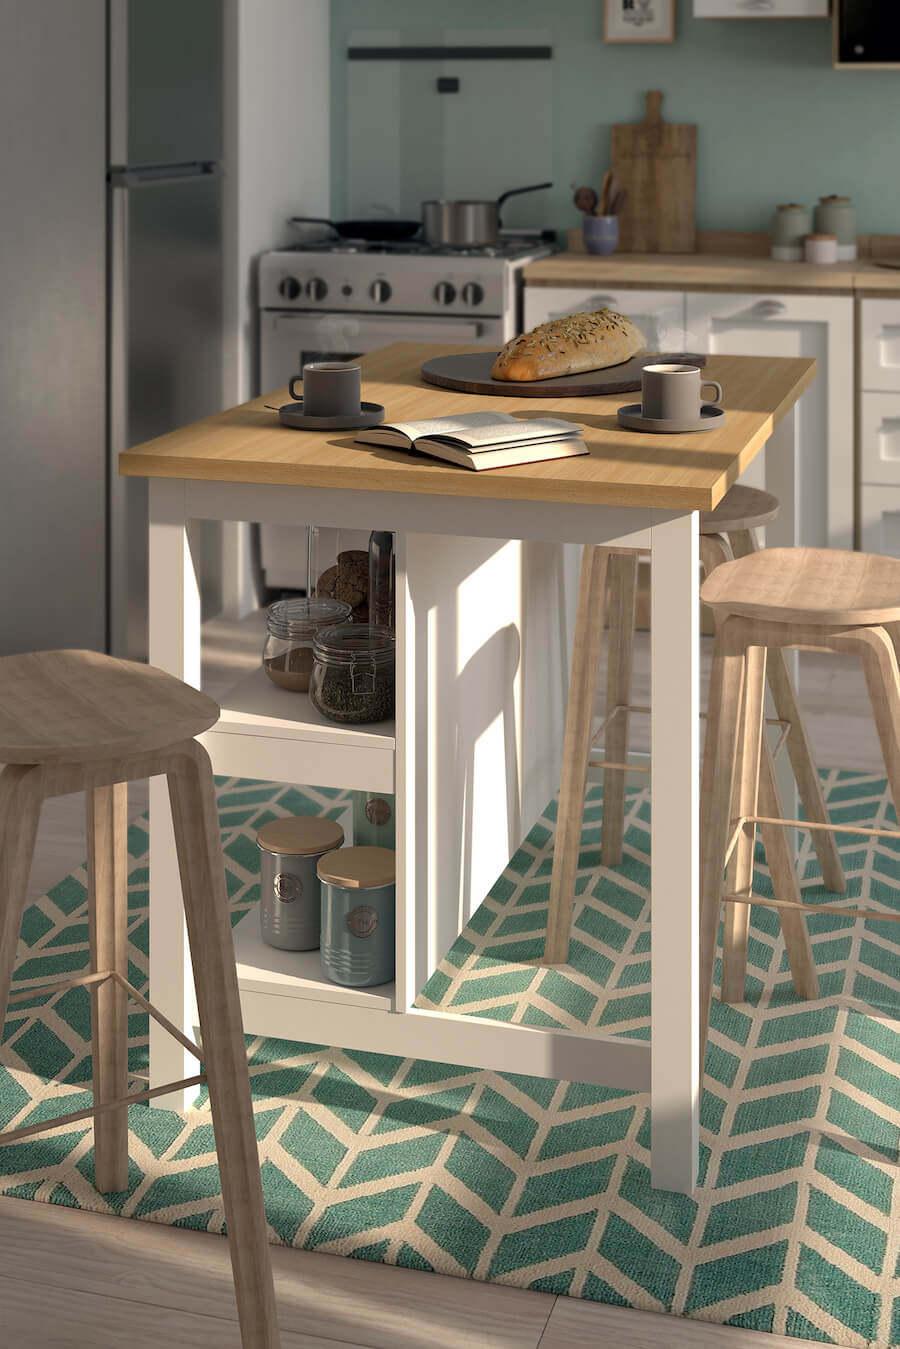 Mueble desayunador cocina americana. Mesa de madera con base café y patas blancas, con espacio de almacenaje. 3 pisos bajos de madera, alfombra color turquesa con diseño geométrico.